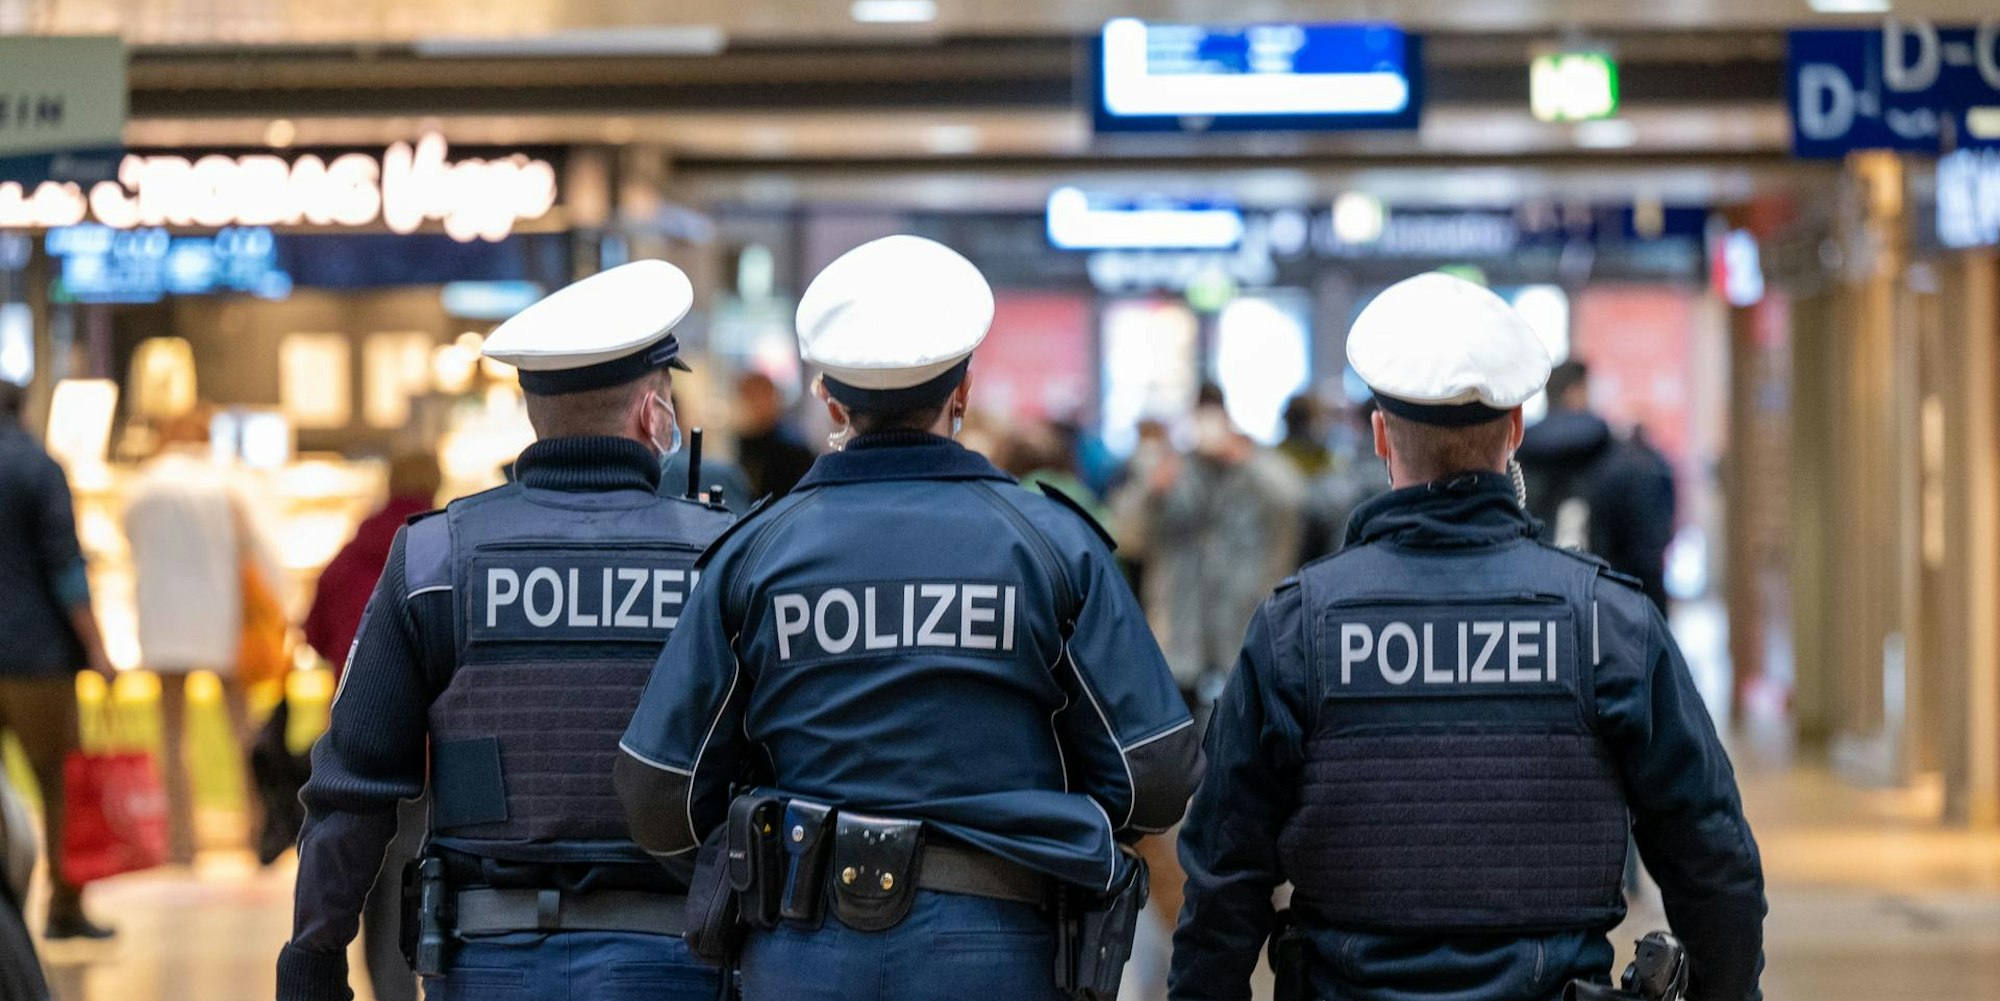 3 Polizisten Hauptbahnhof